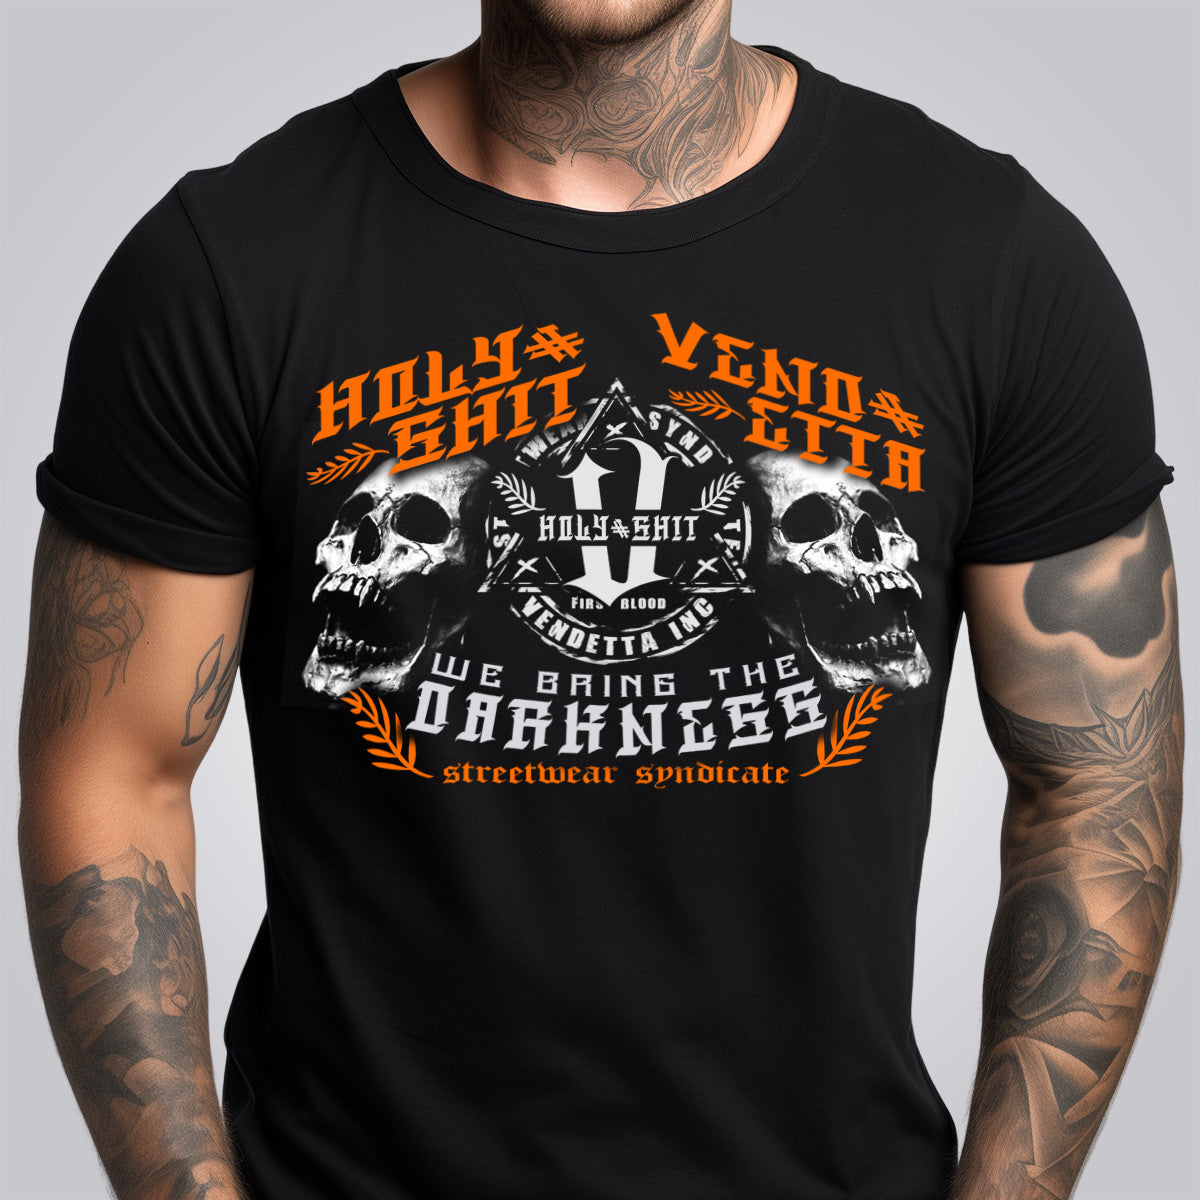 Vendetta Inc. Shirt schwarz Darkness "2"